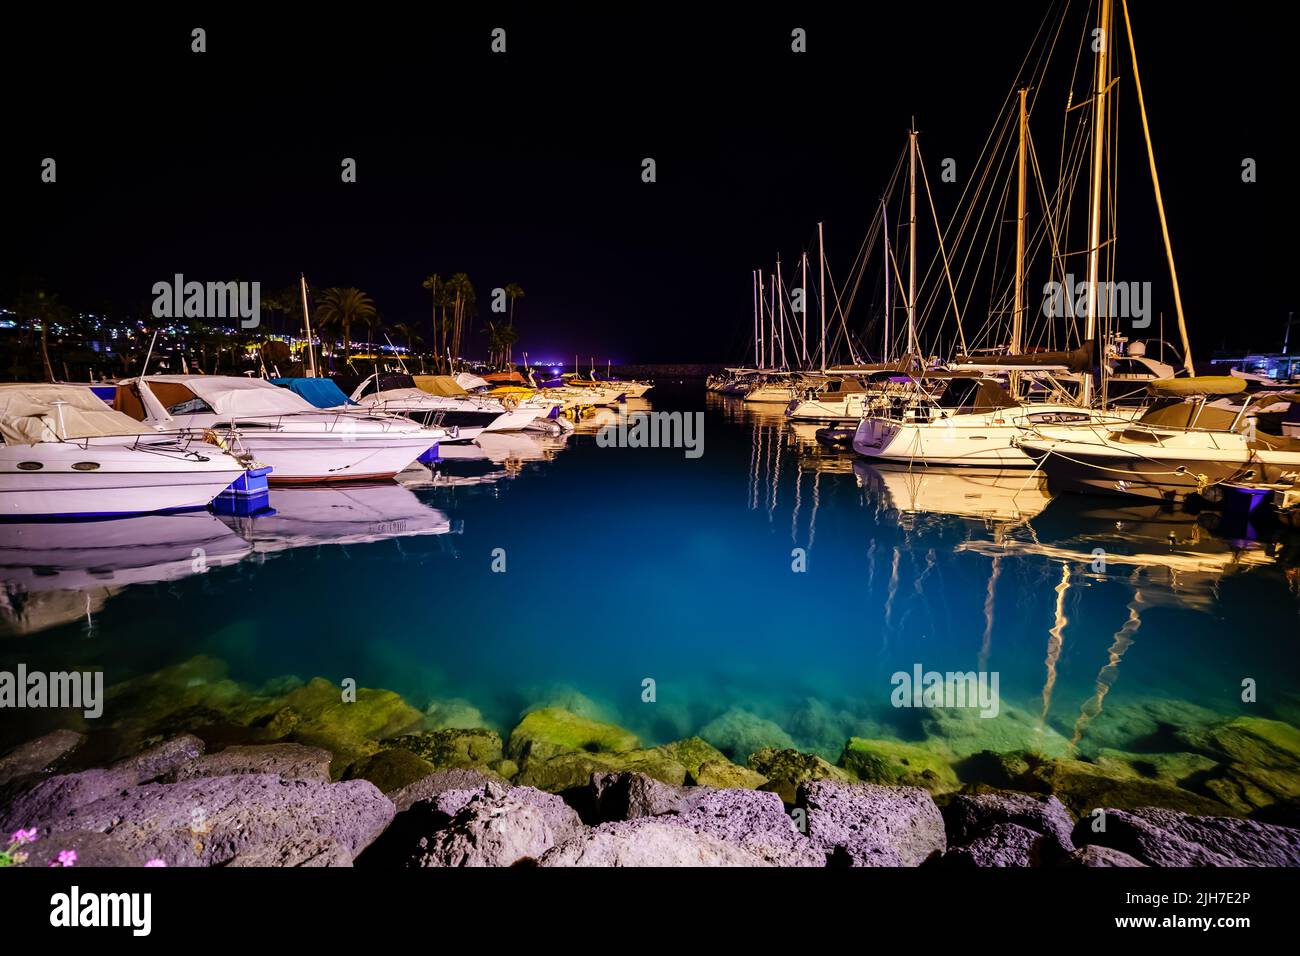 Nachtfoto des Yachthafens mit festfahrenden Booten und transparentem blauem Wasser, das den felsigen Grund enthüllt. Stockfoto